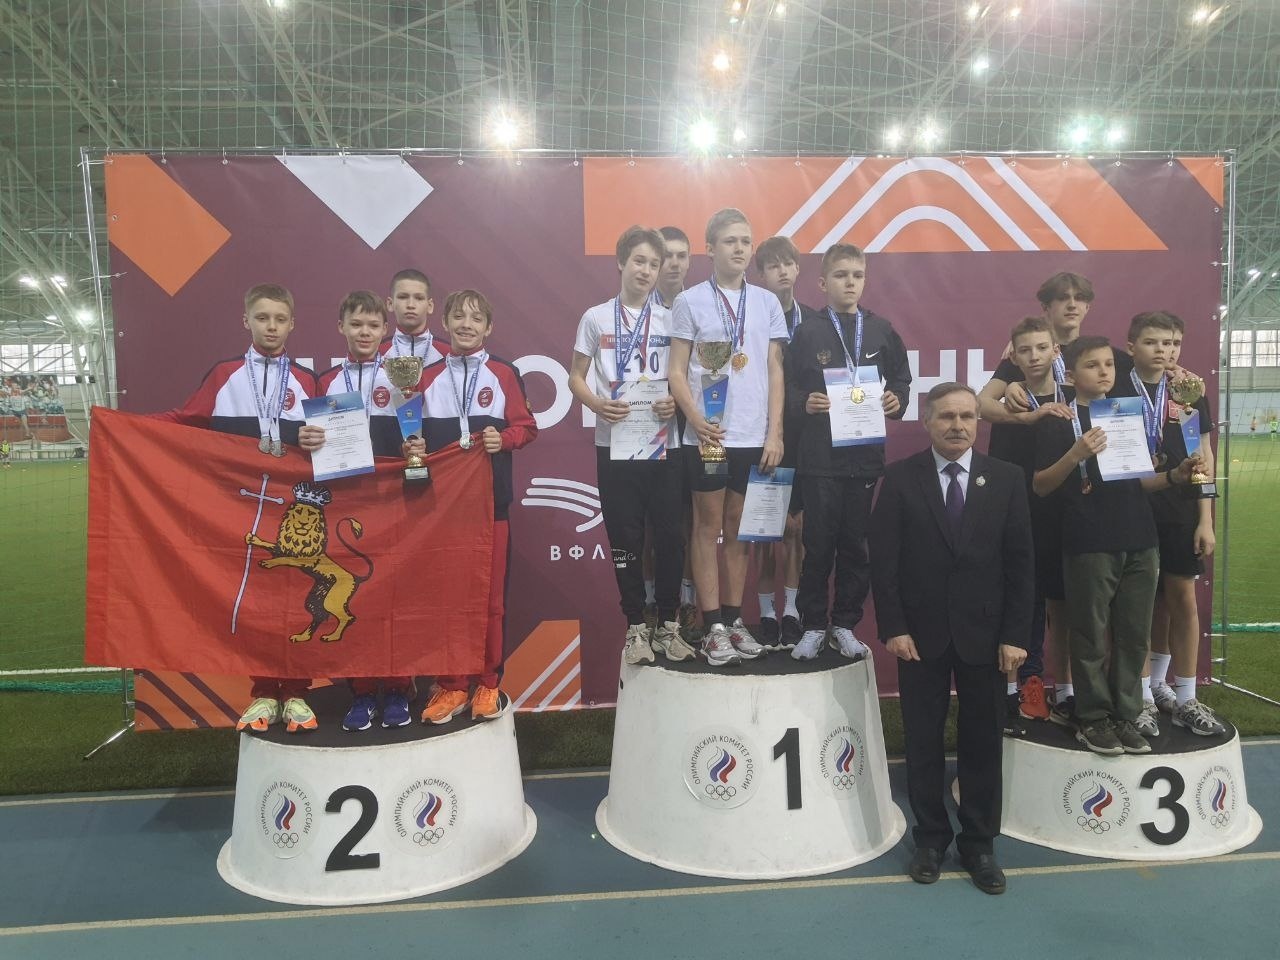 Юные владимирские спортсмены заняли призовые места на Всероссийских соревнованиях 